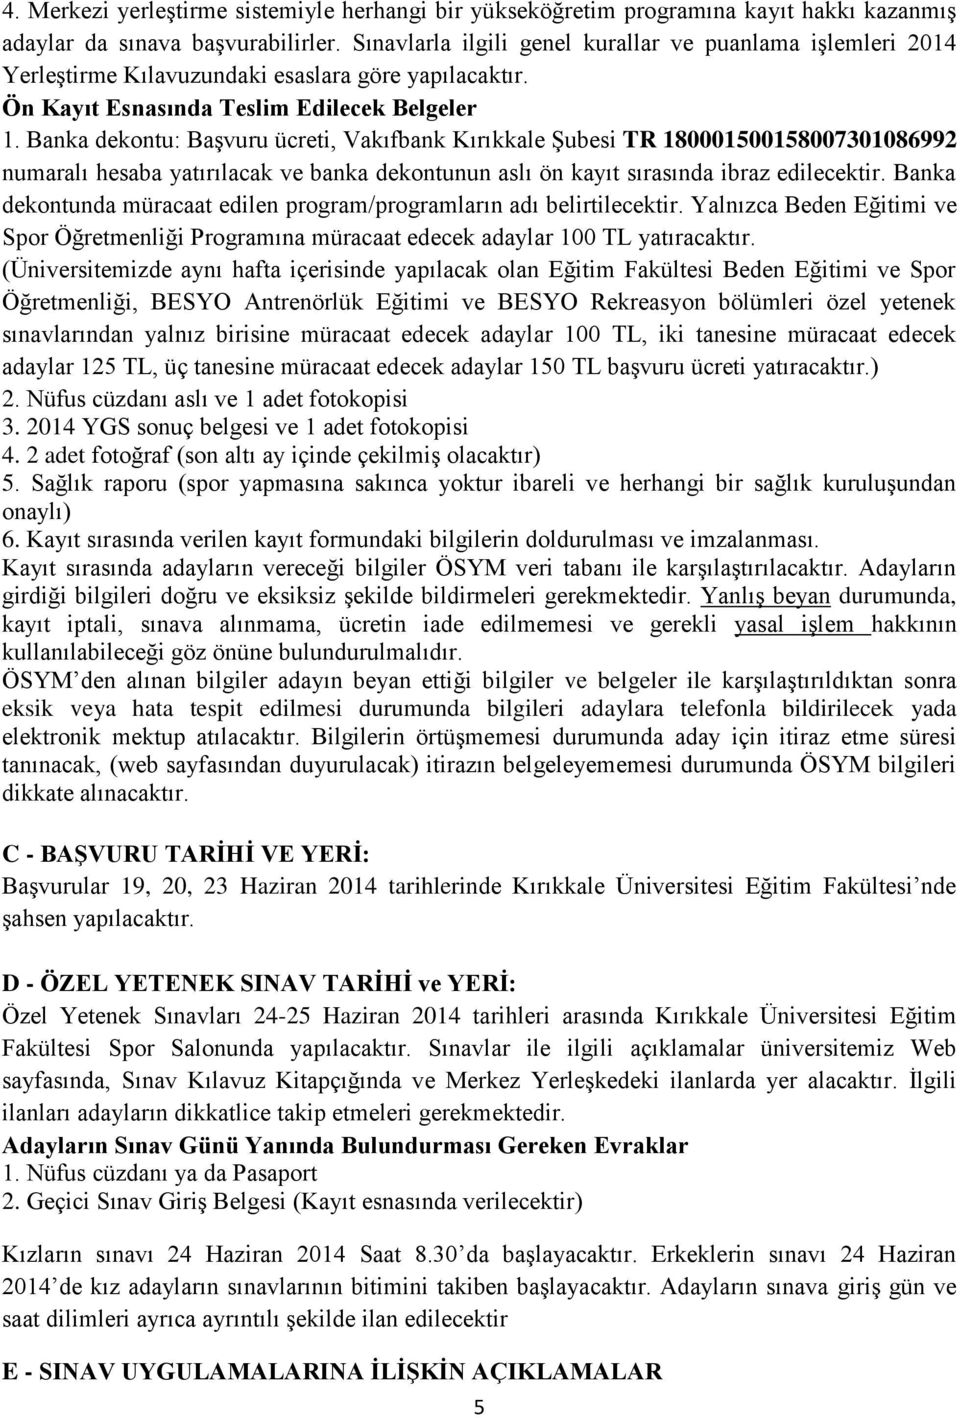 Banka dekontu: Başvuru ücreti, Vakıfbank Kırıkkale Şubesi TR 180001500158007301086992 numaralı hesaba yatırılacak ve banka dekontunun aslı ön kayıt sırasında ibraz edilecektir.